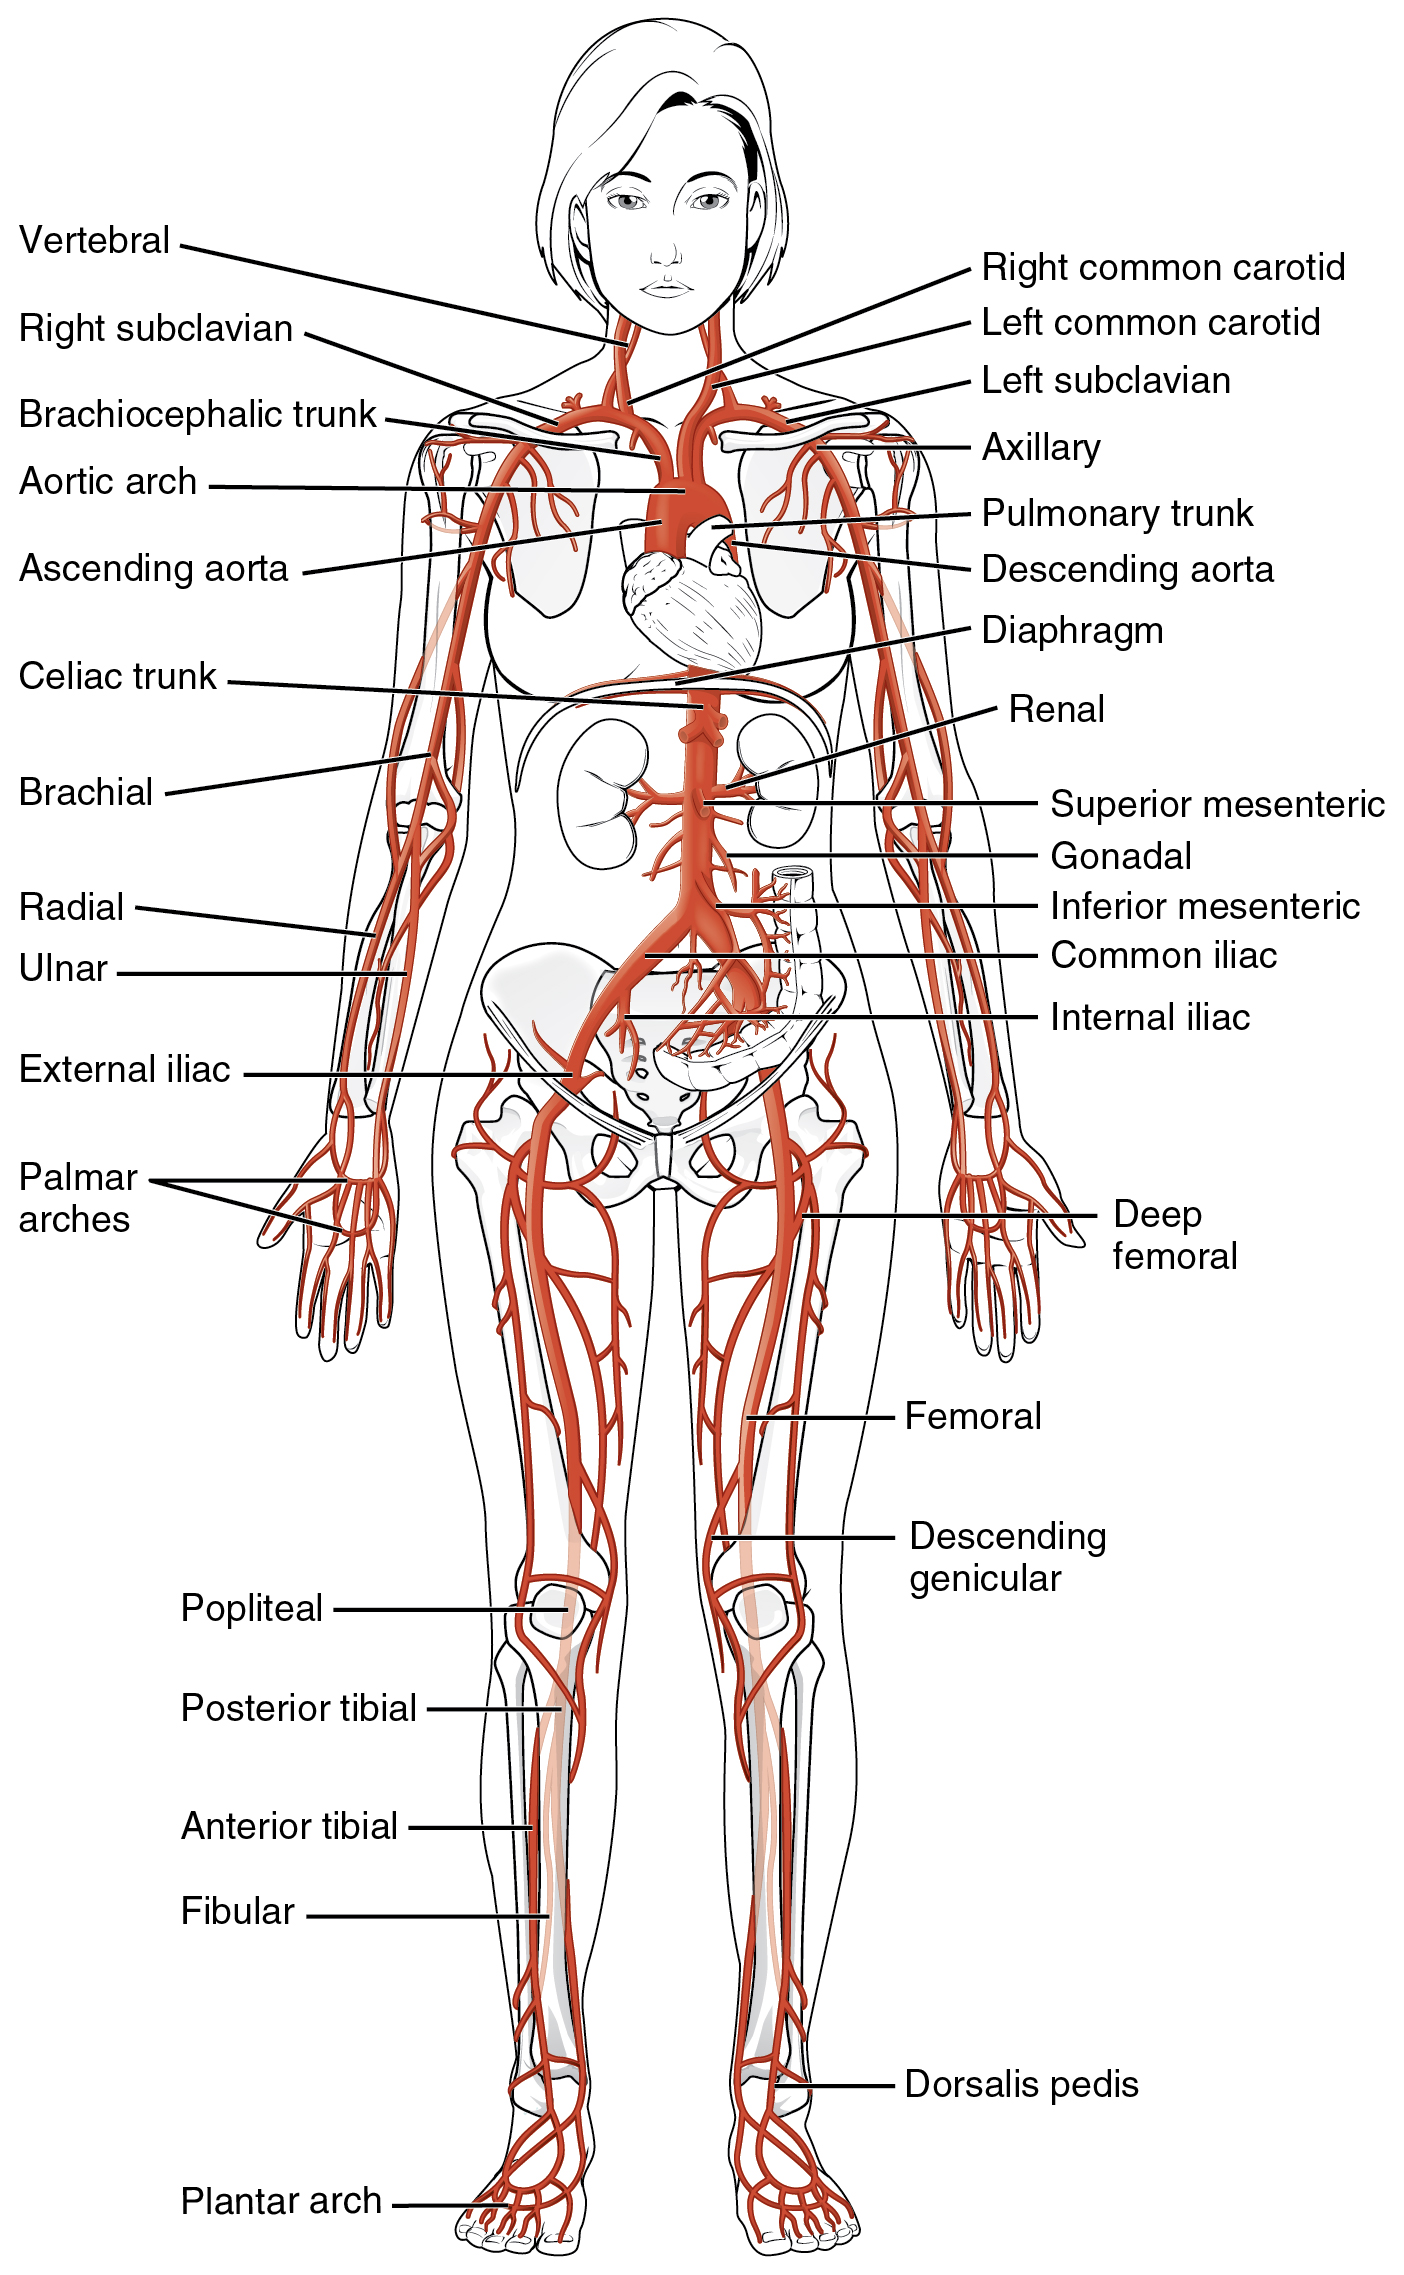 Este diagrama mostra as principais artérias do corpo humano.